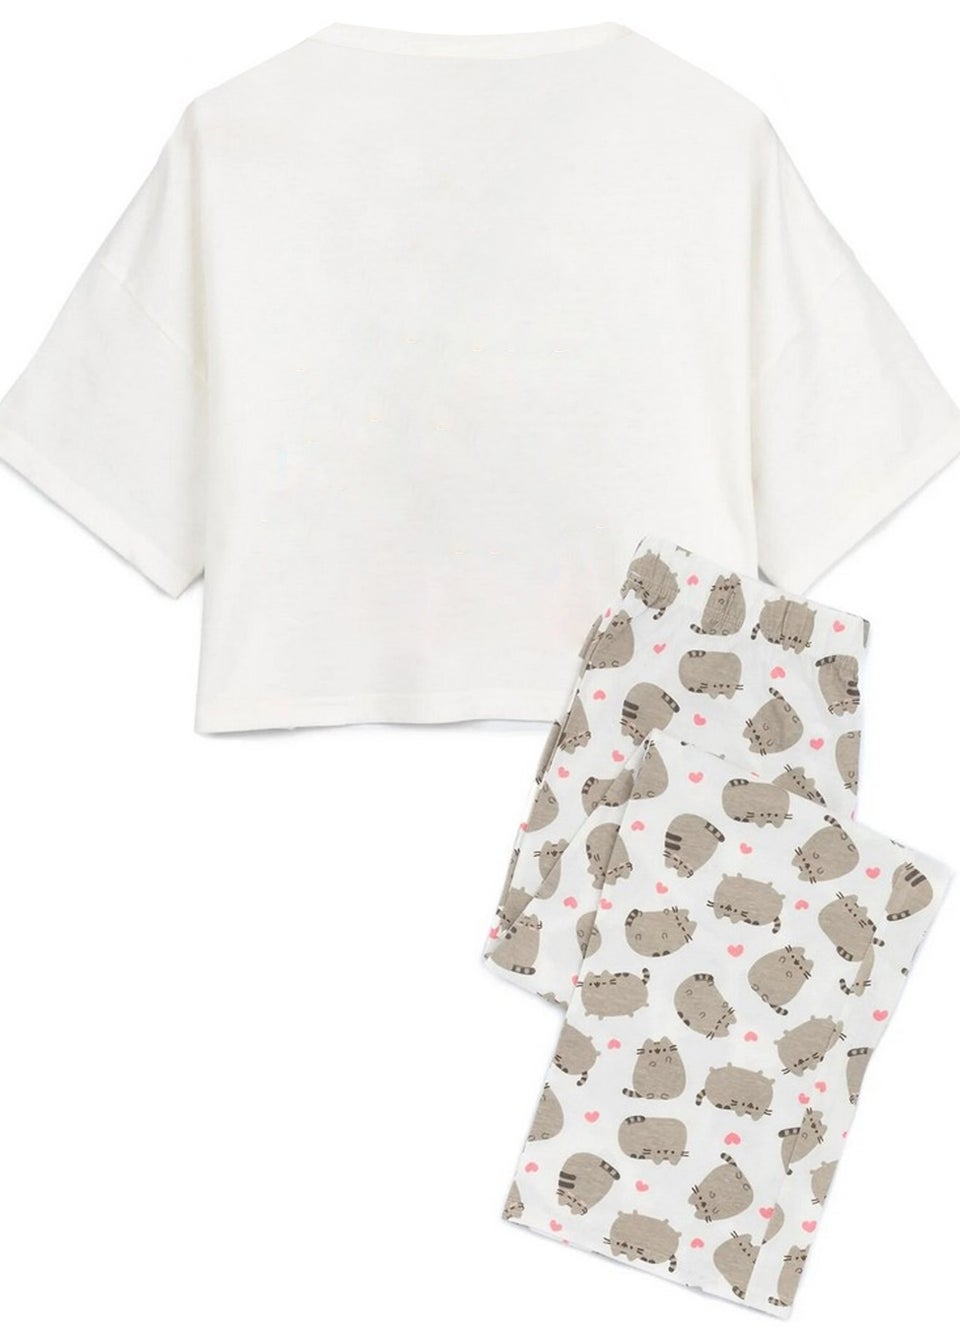 Pusheen White Nah Long Pyjama Set